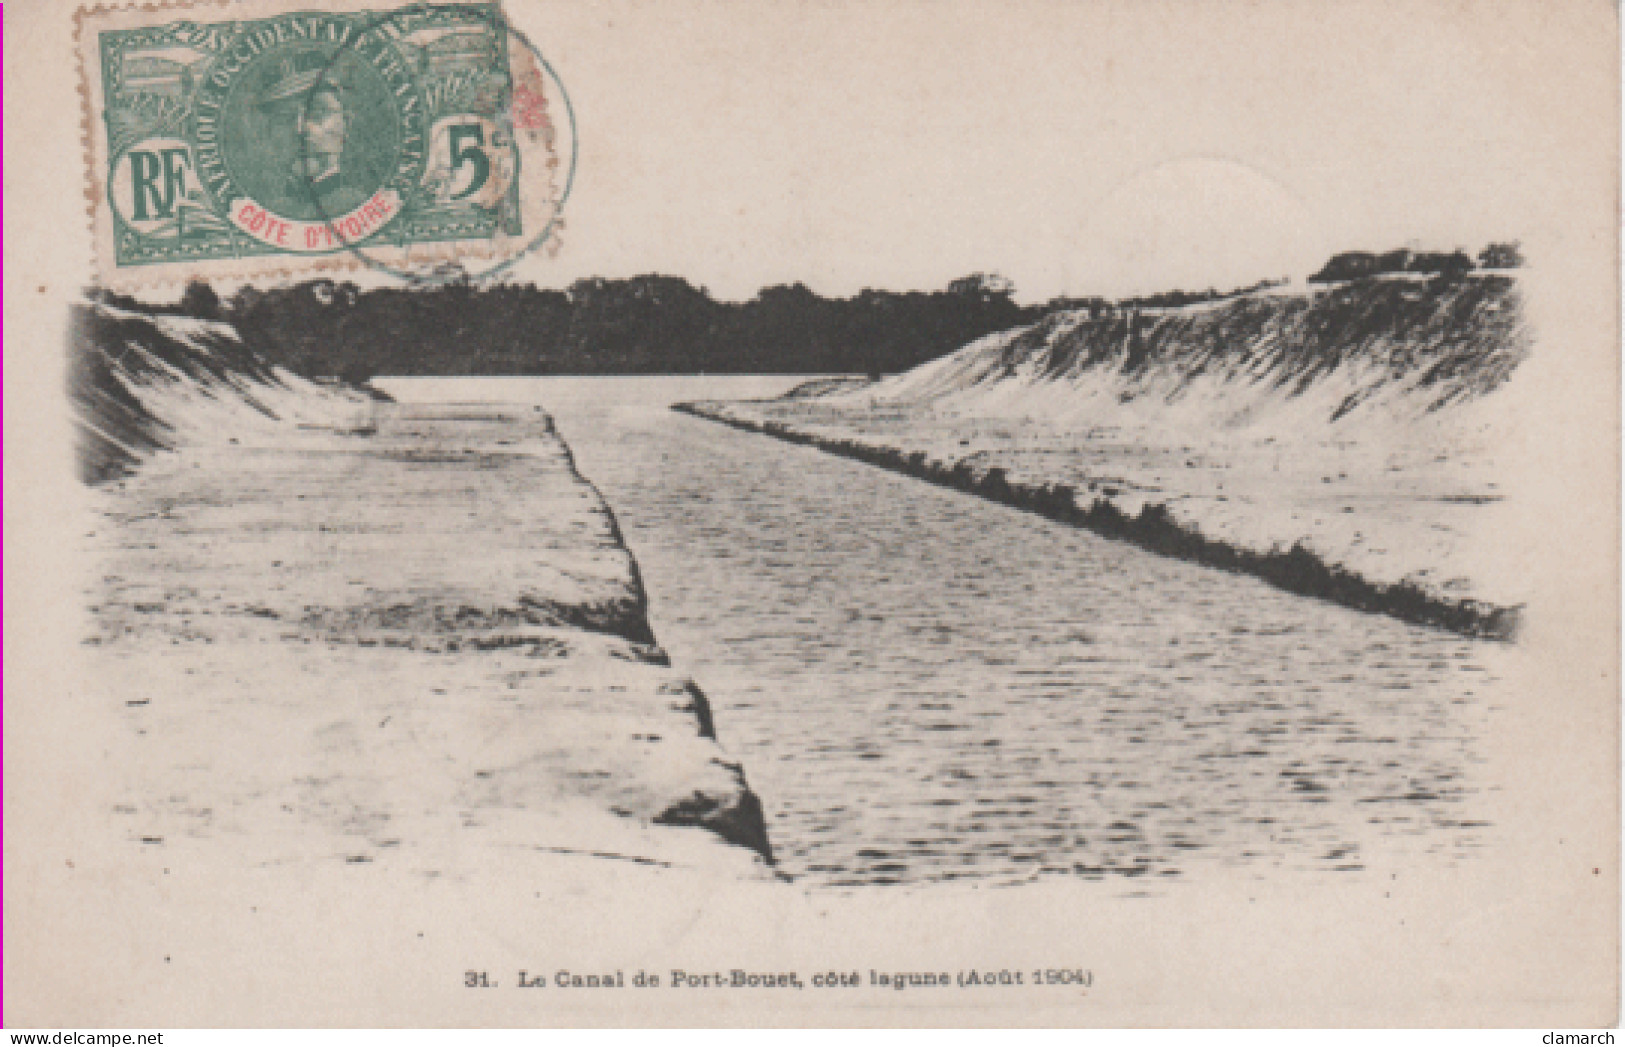 COTE D'IVOIRE-Le Canal De Port Bouet, Côté Lagune ( Août 1904) 31 - Ivory Coast